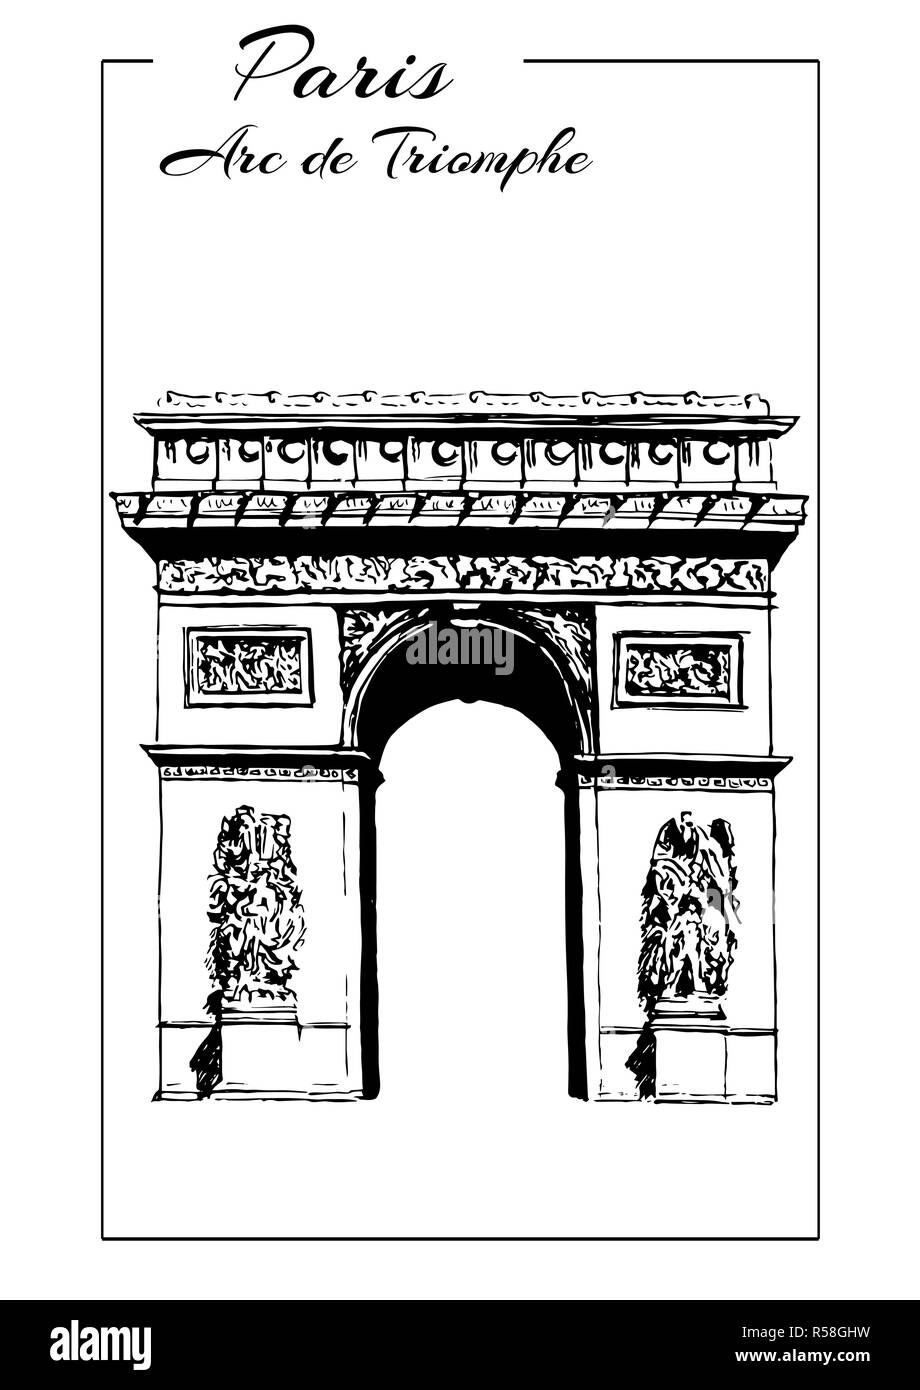 Arc de Triomphe, Paris, France. triumphal arch, sketch vector illustration Stock Photo